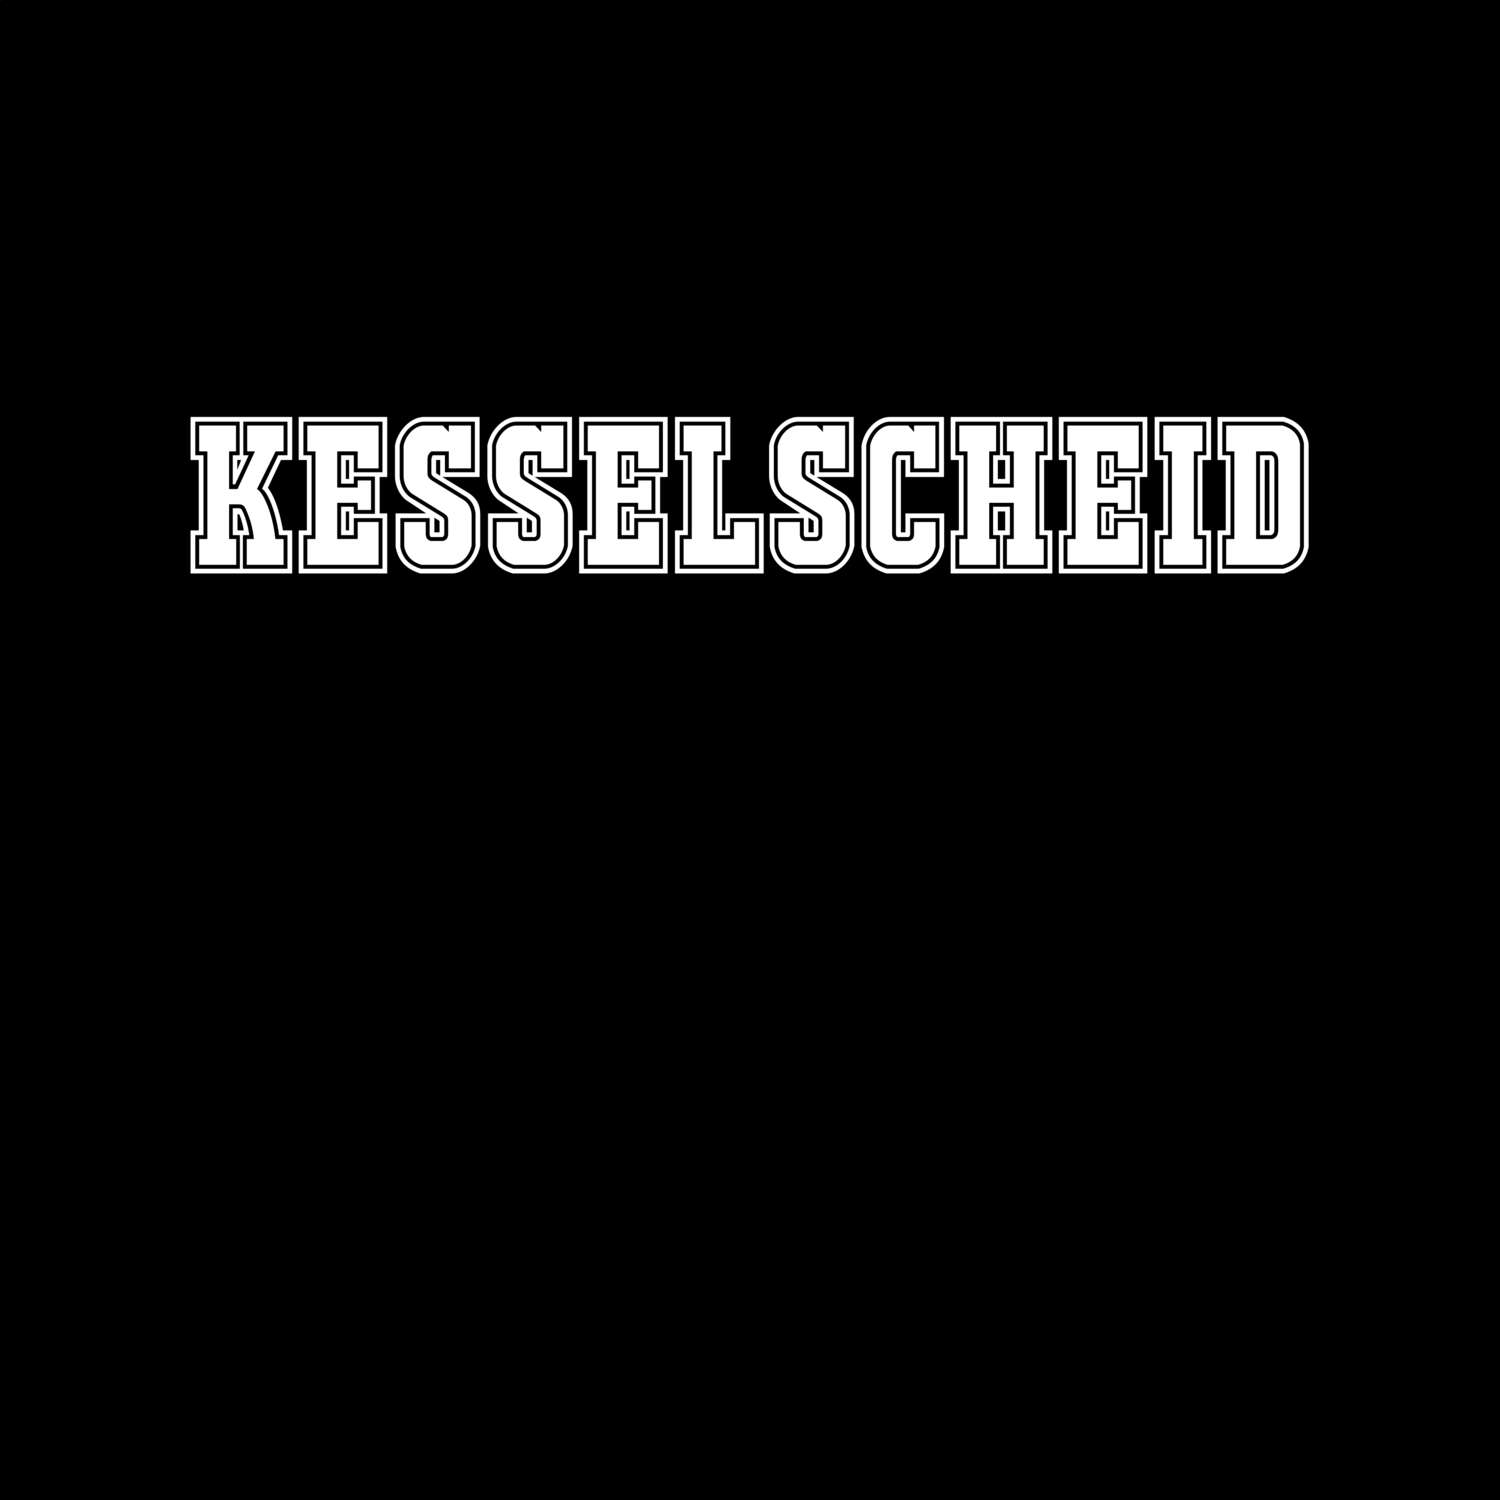 Kesselscheid T-Shirt »Classic«